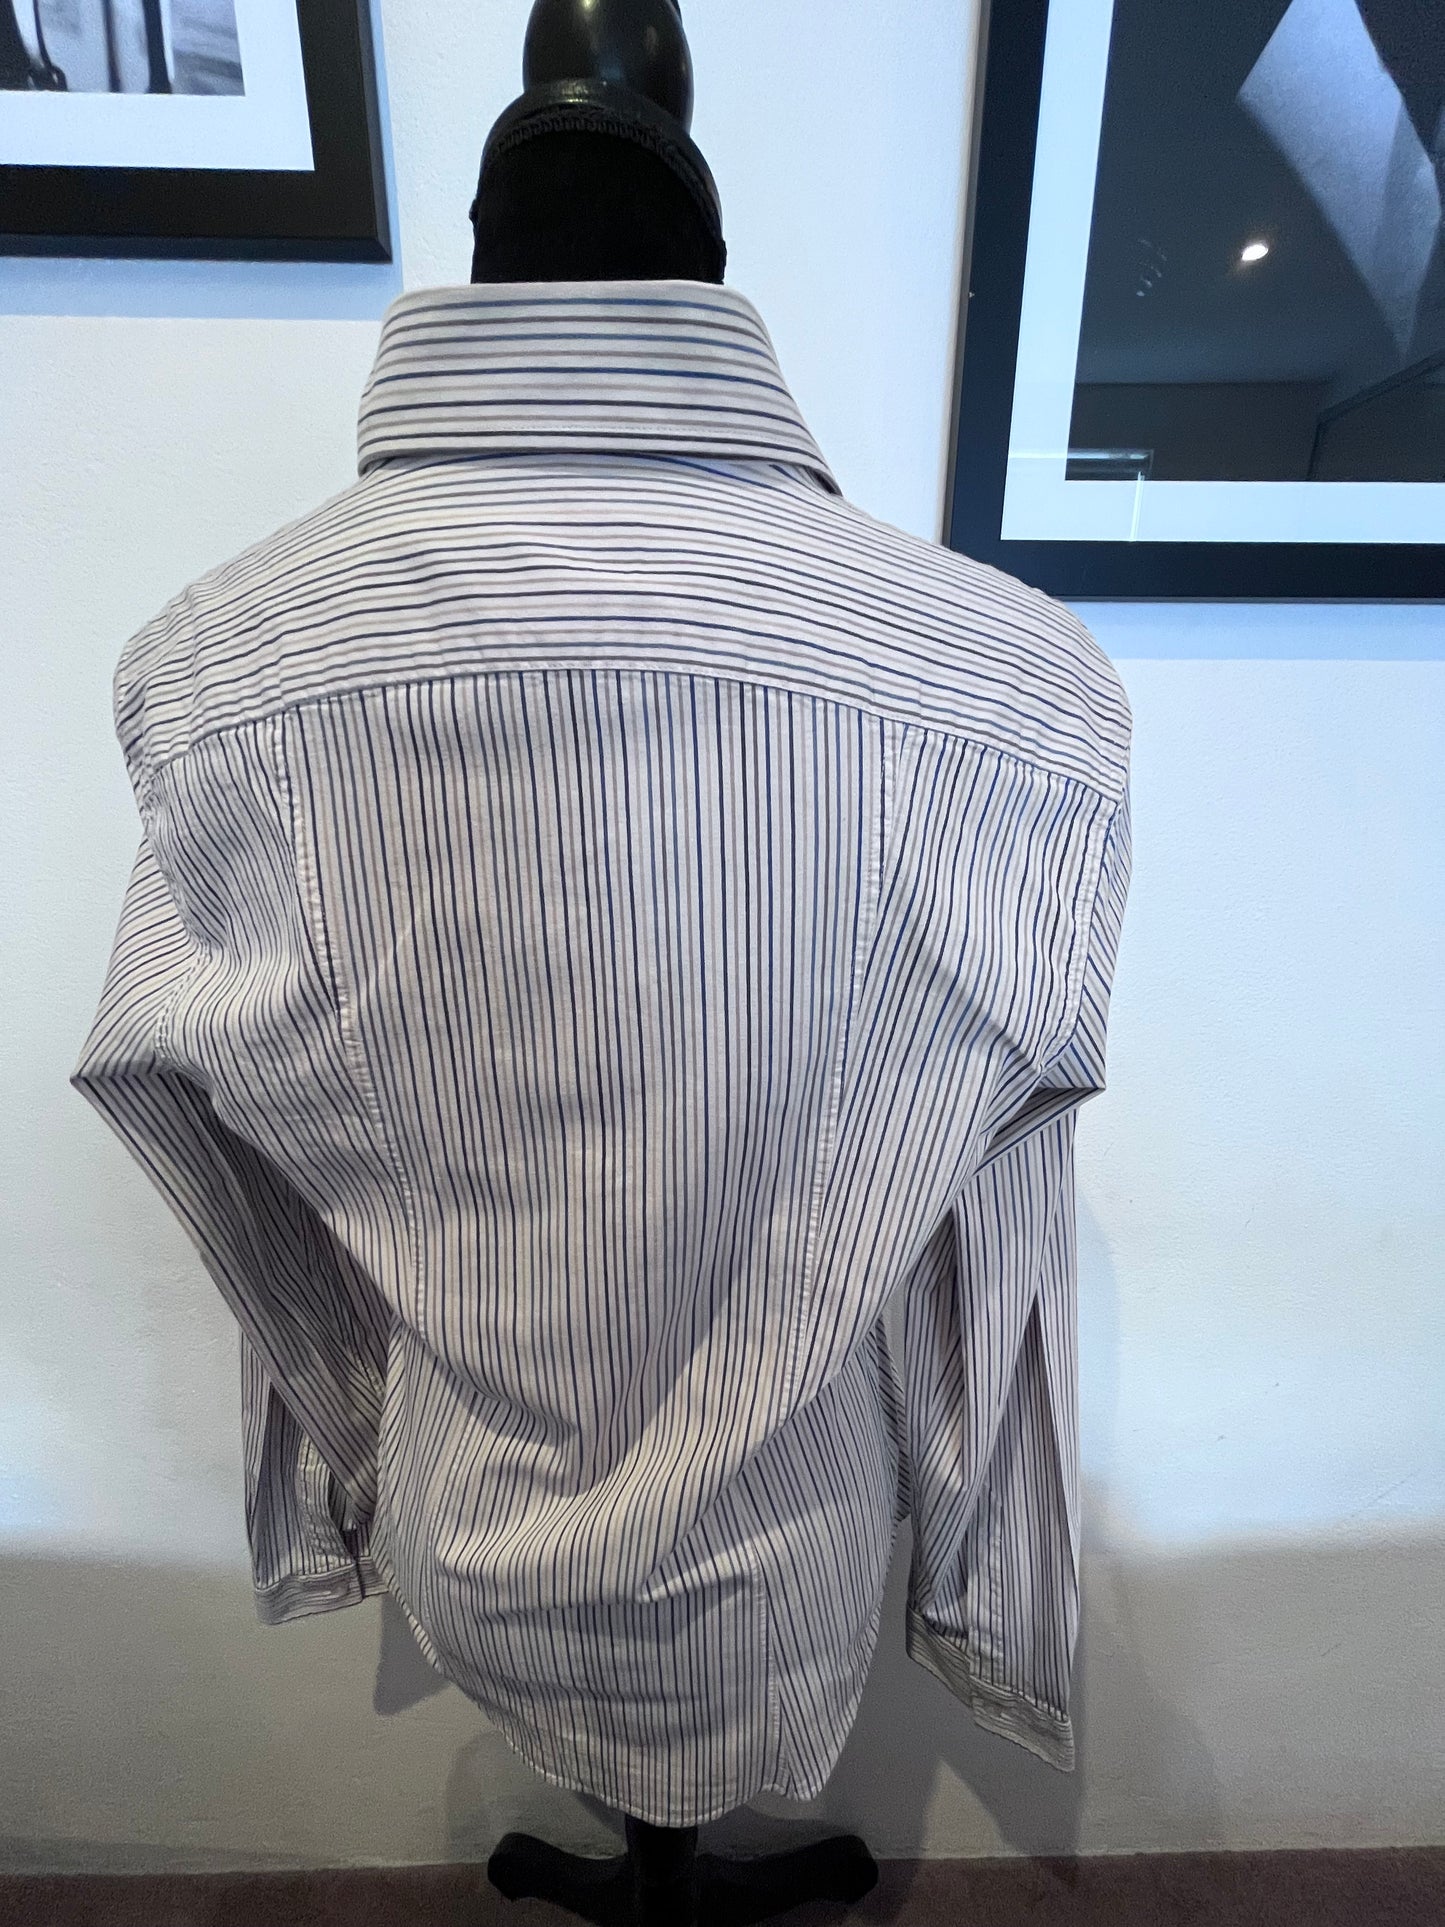 Armani Women’s 100% Cotton Off White Pin Stripe Shirt Size M Slim Fit